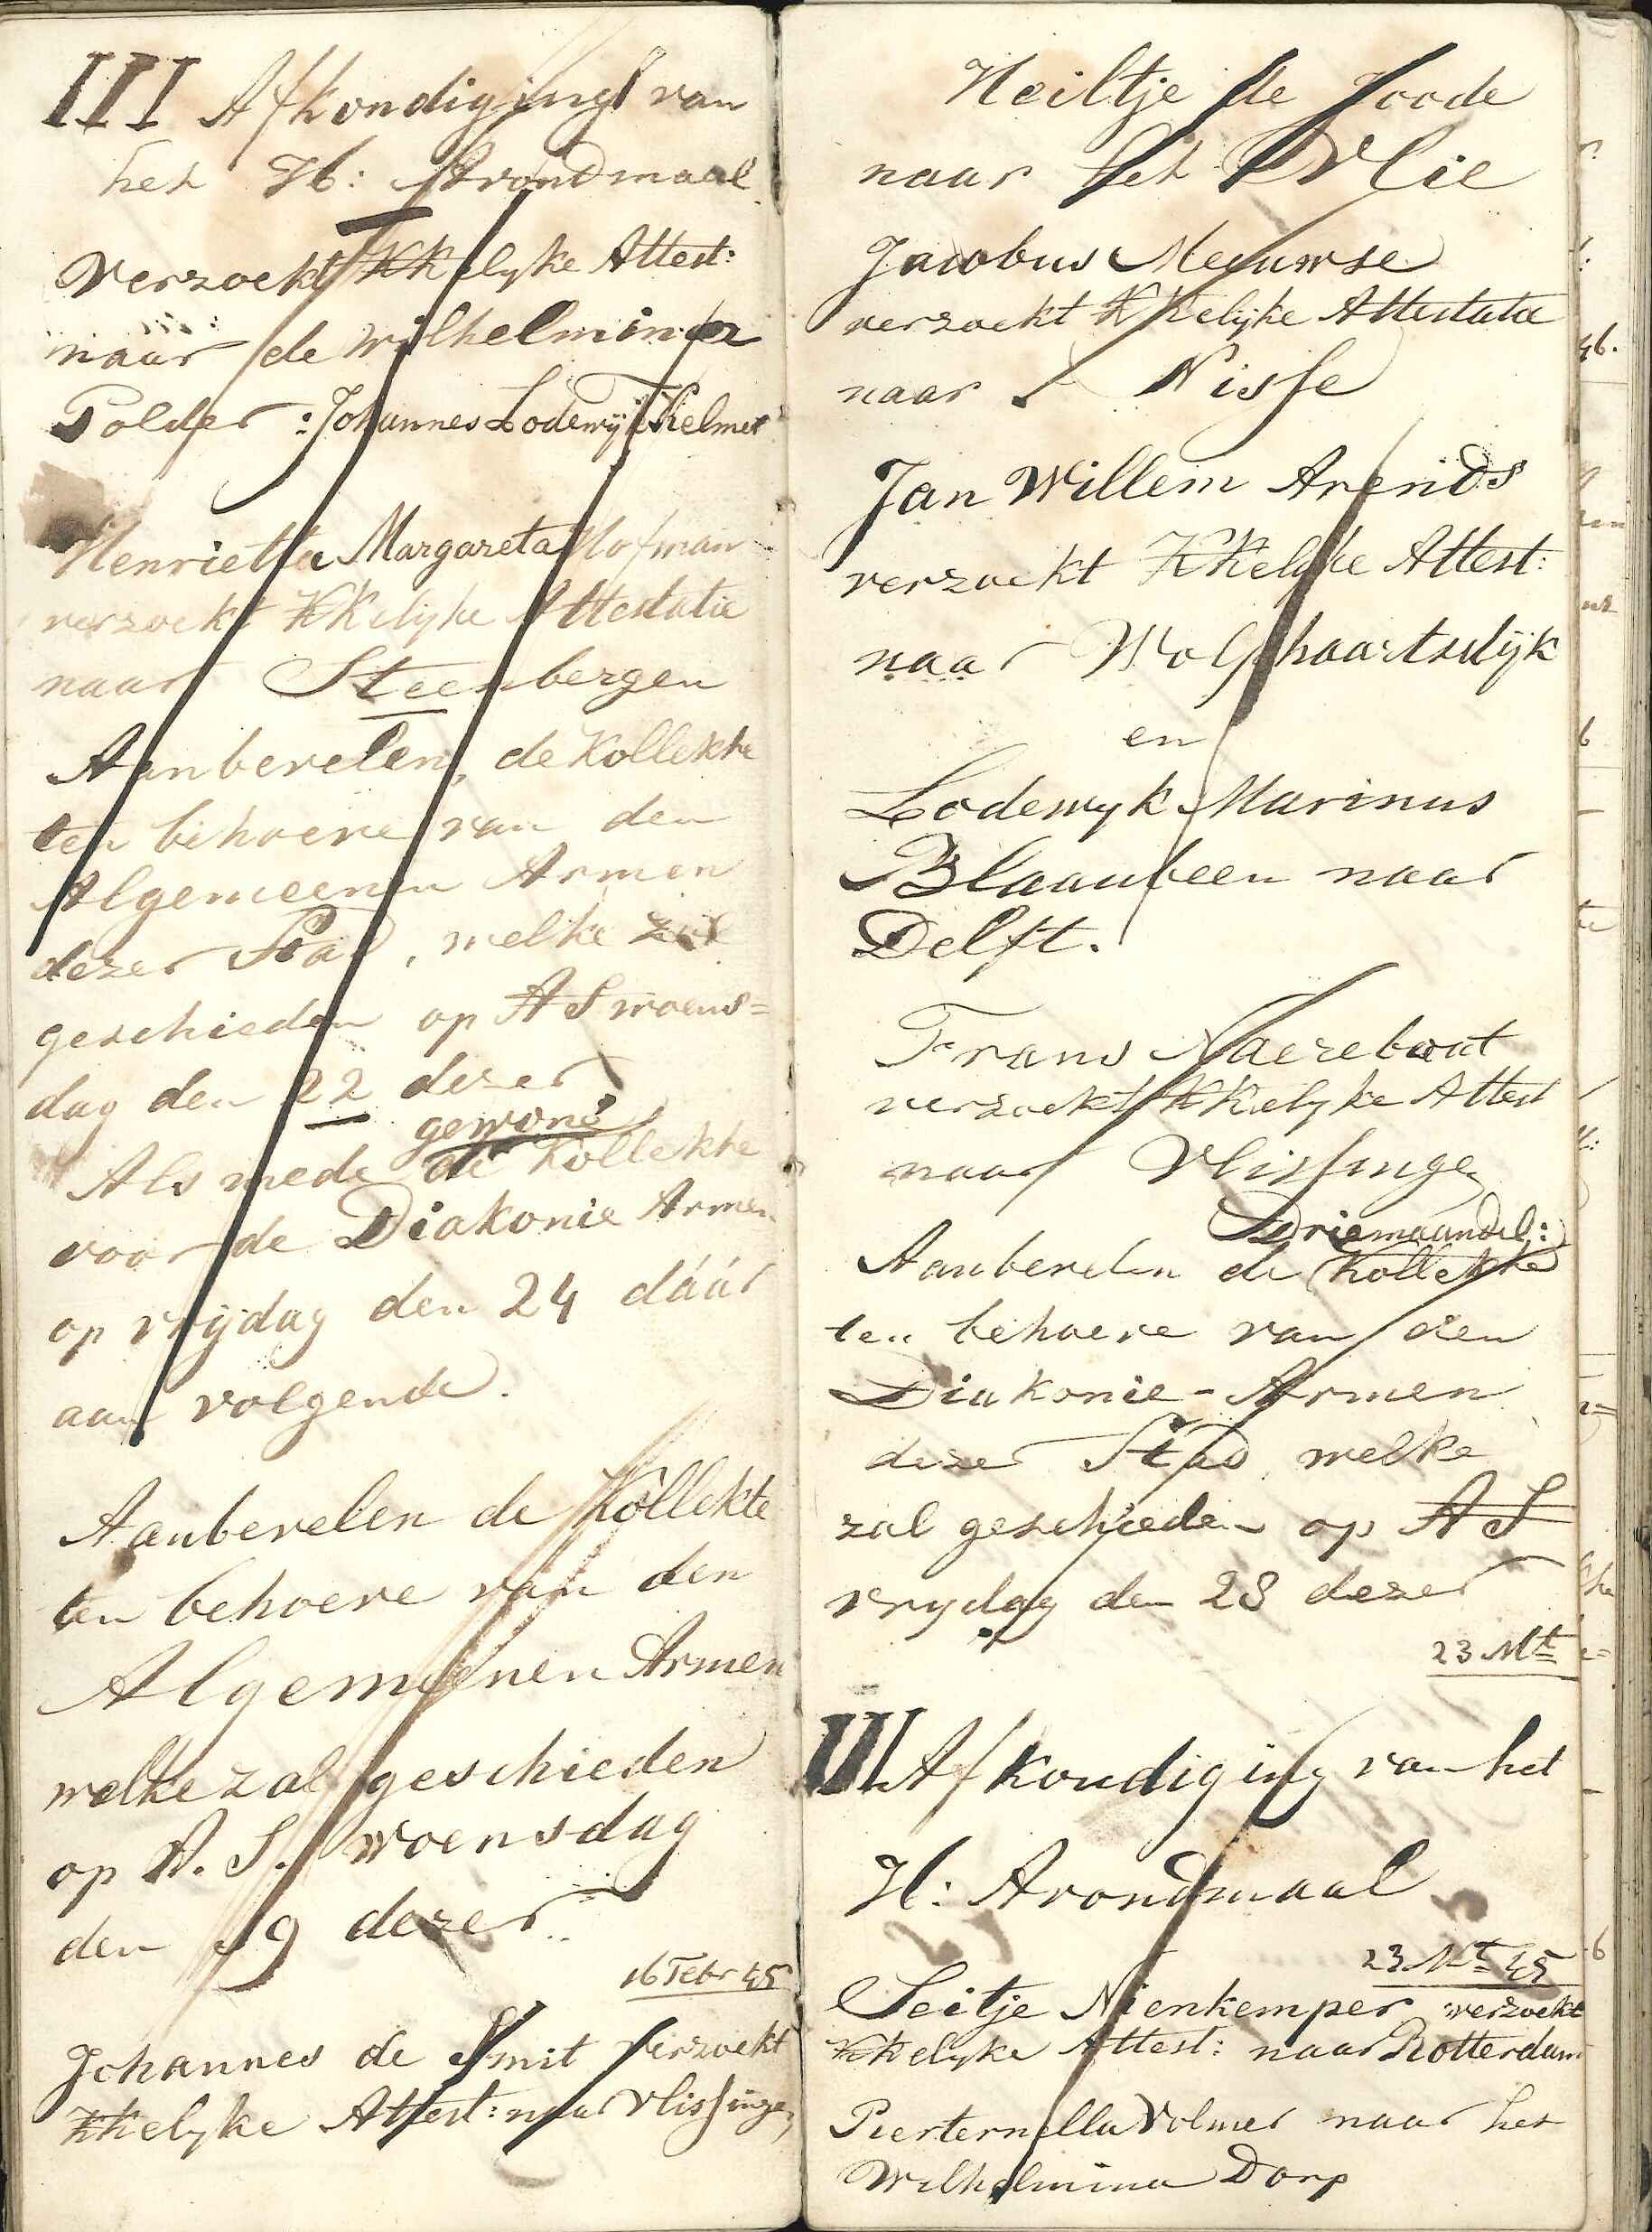 Bladzijde met kanselafkondigingen, 1845. GAG.arch.herv.kerk, inv.nr. 44.